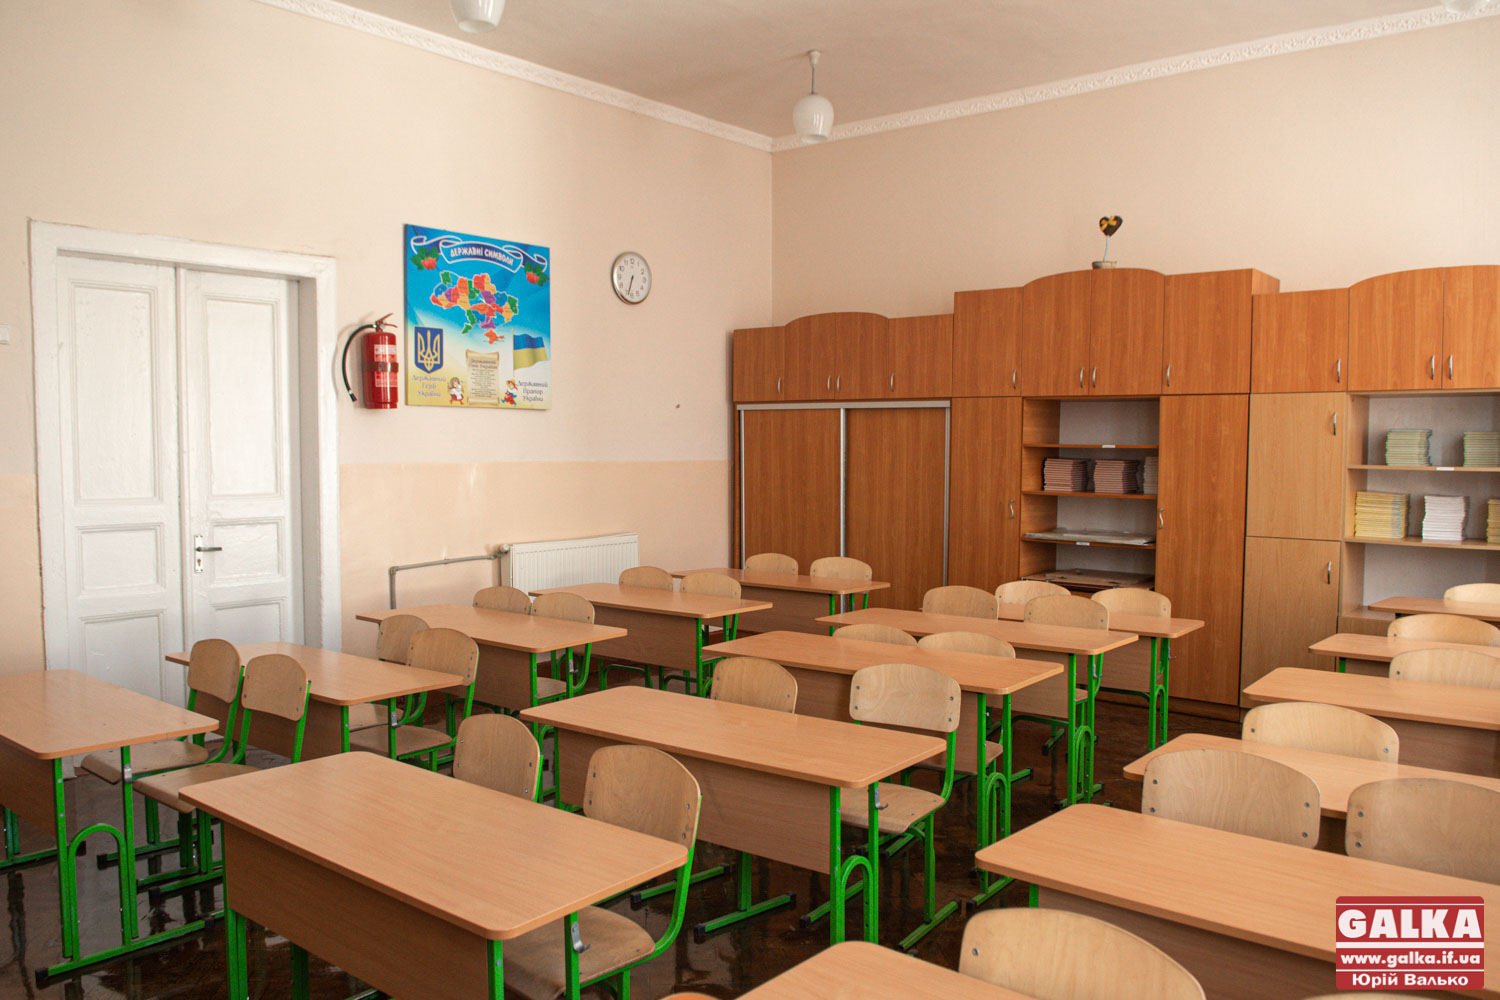 Українська гімназія №1 очолила рейтинг шкіл Івано-Франківська